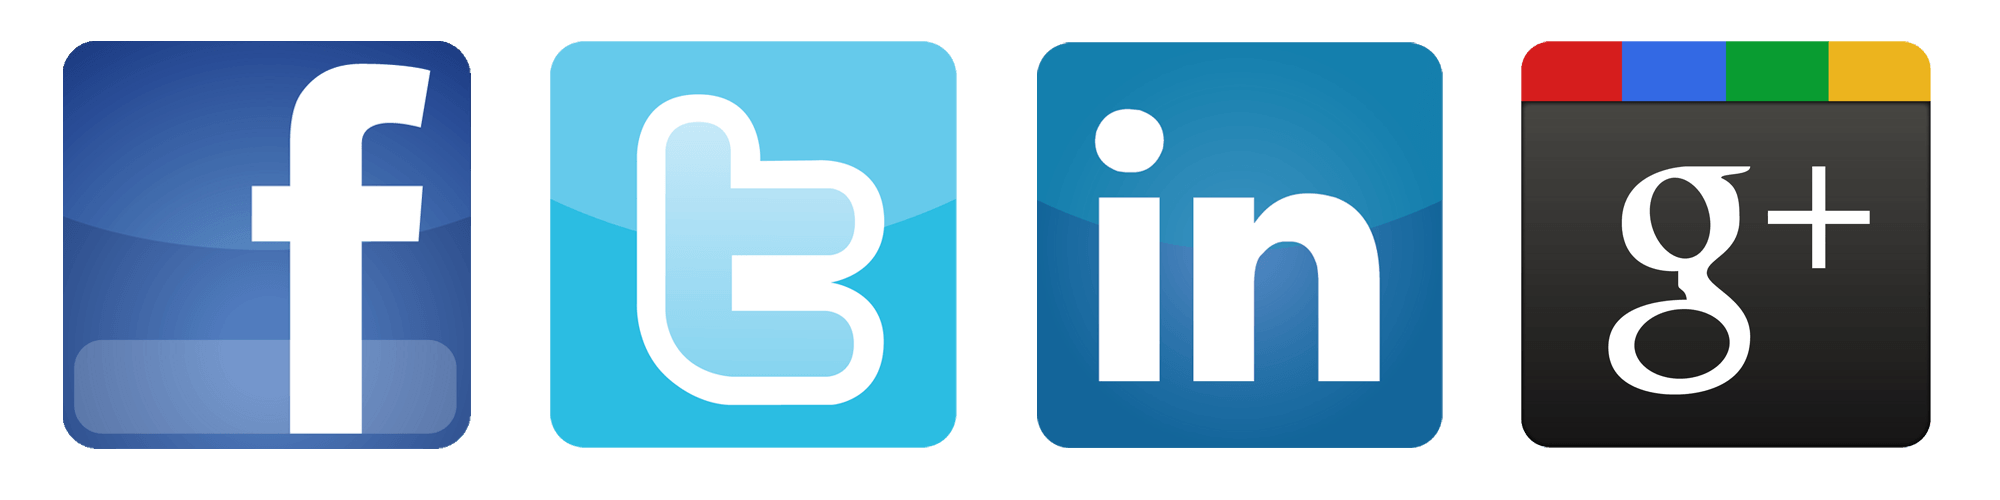 Facebook Twitter LinkedIn Logo - Facebook Twiter Logo Png Images